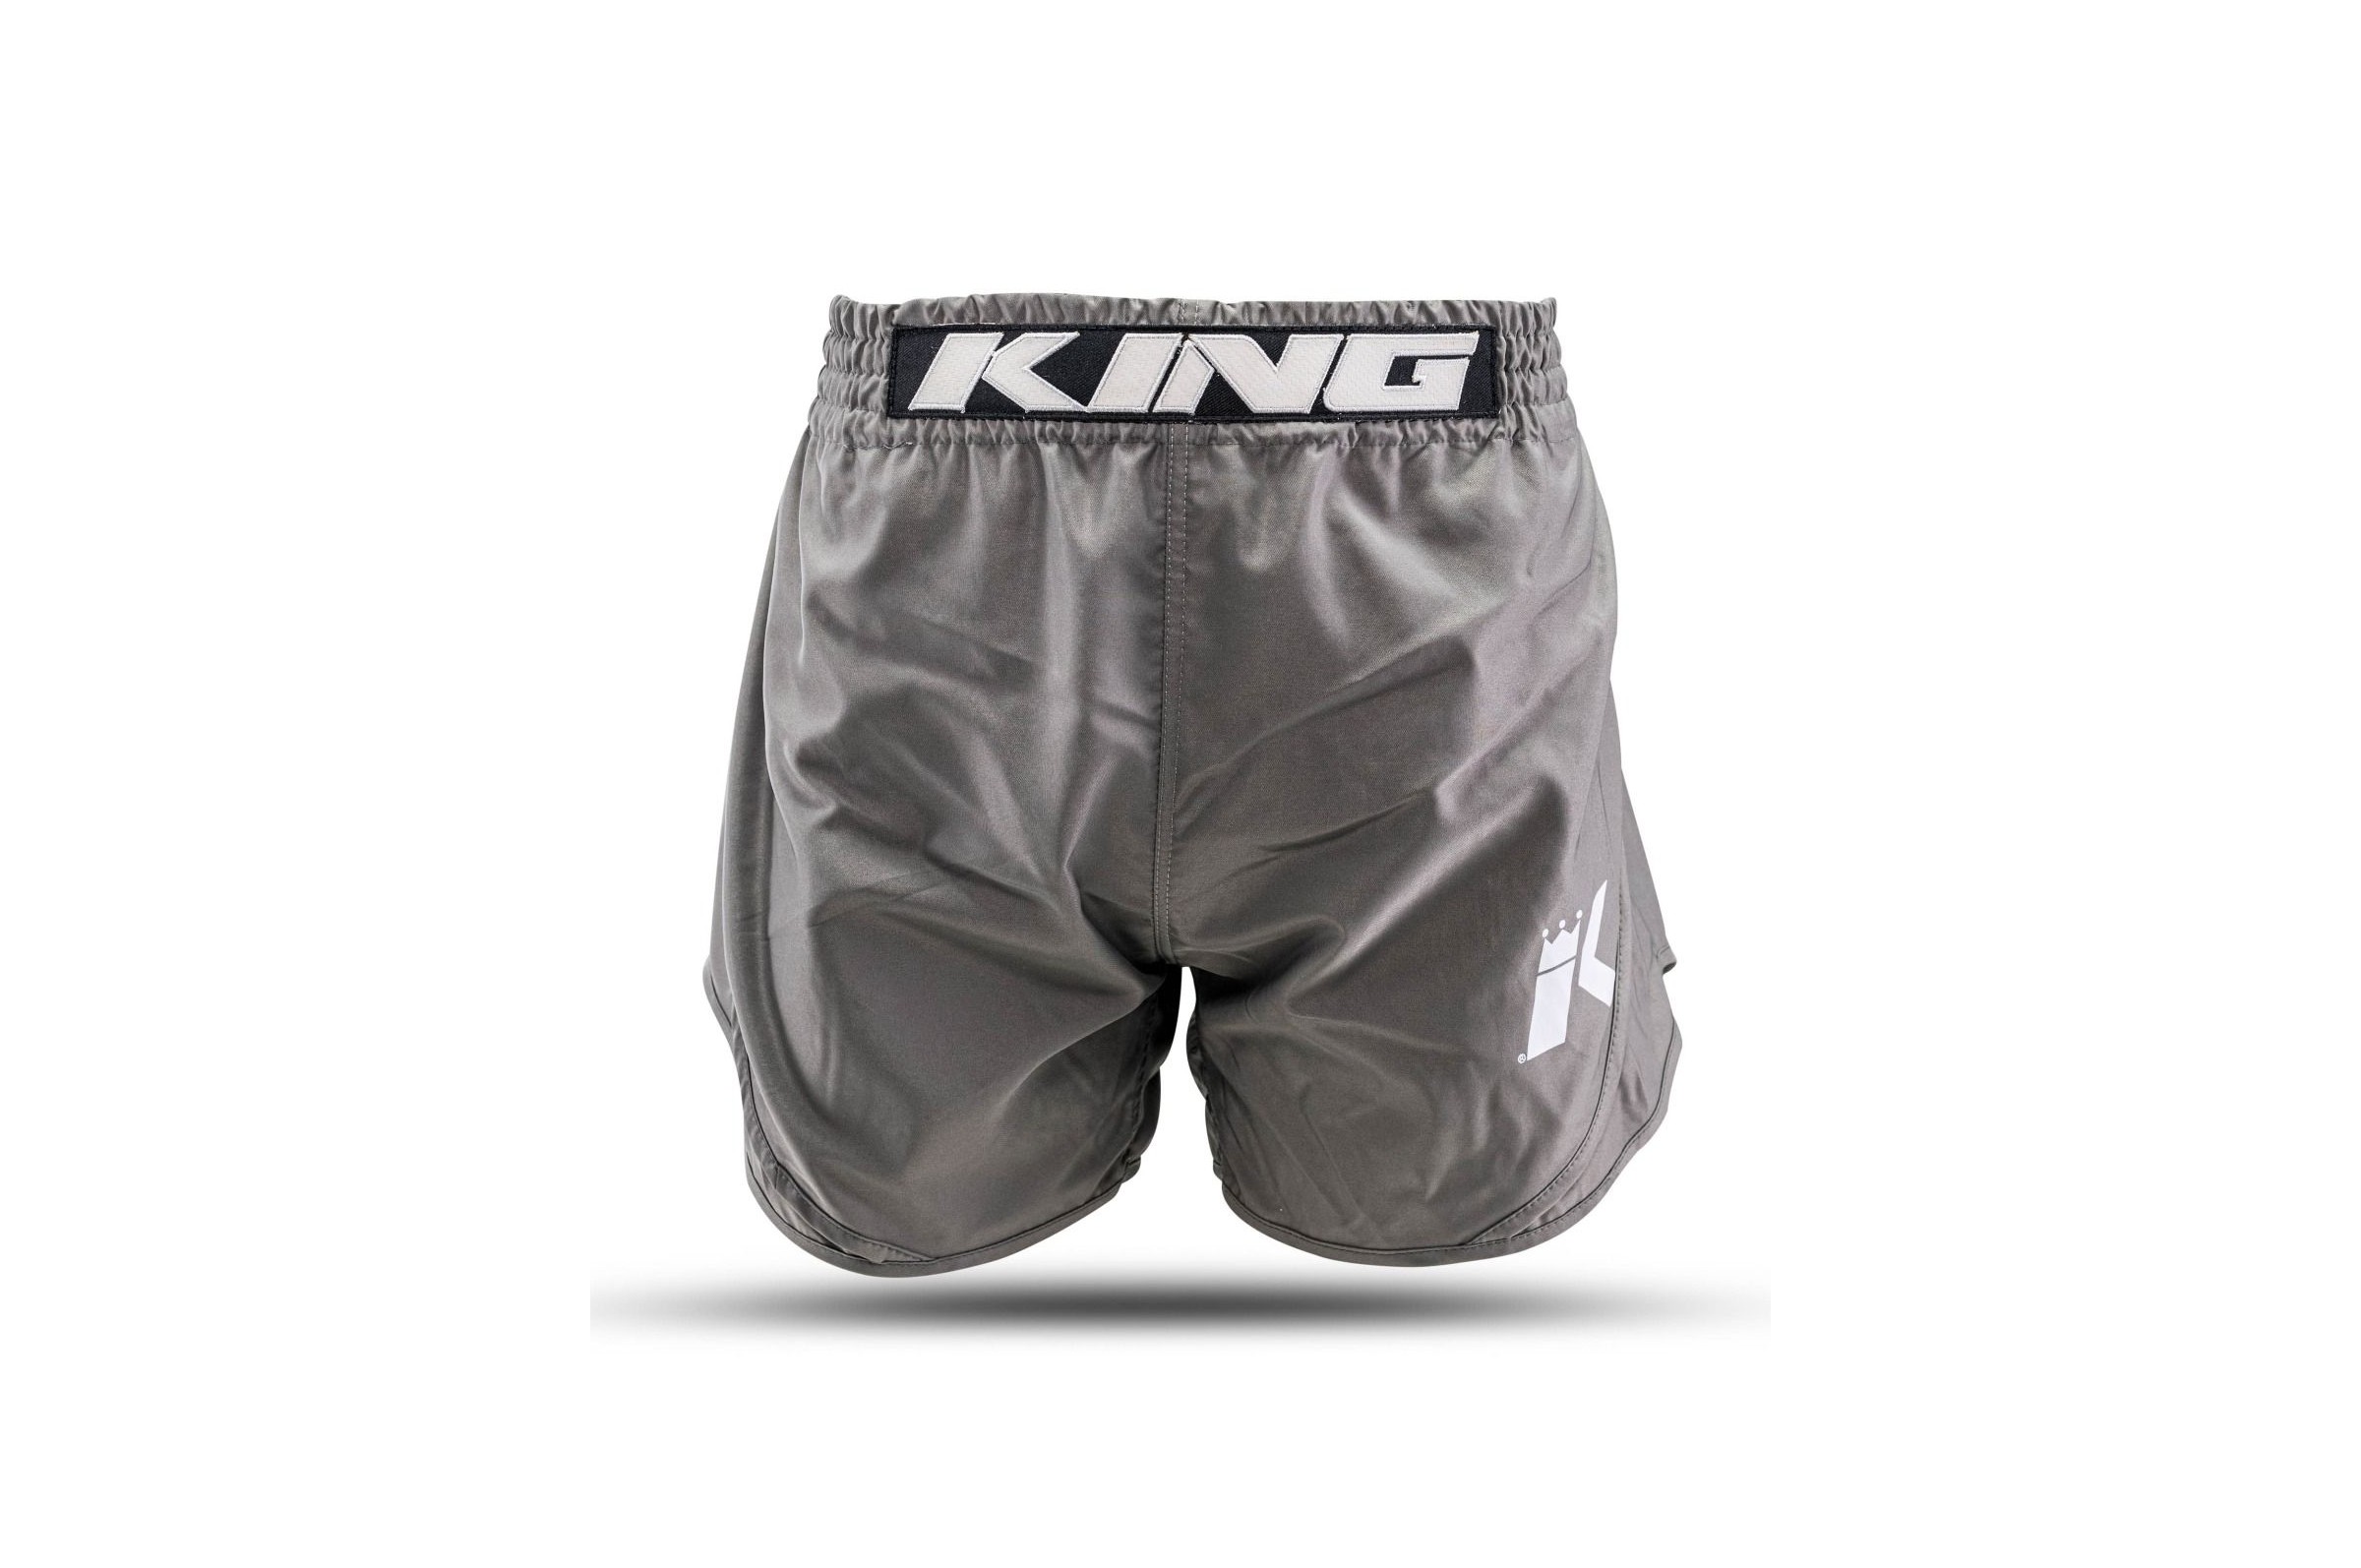 Thai Boxing & Kick Boxing Shorts - Classic, King Pro Boxing 